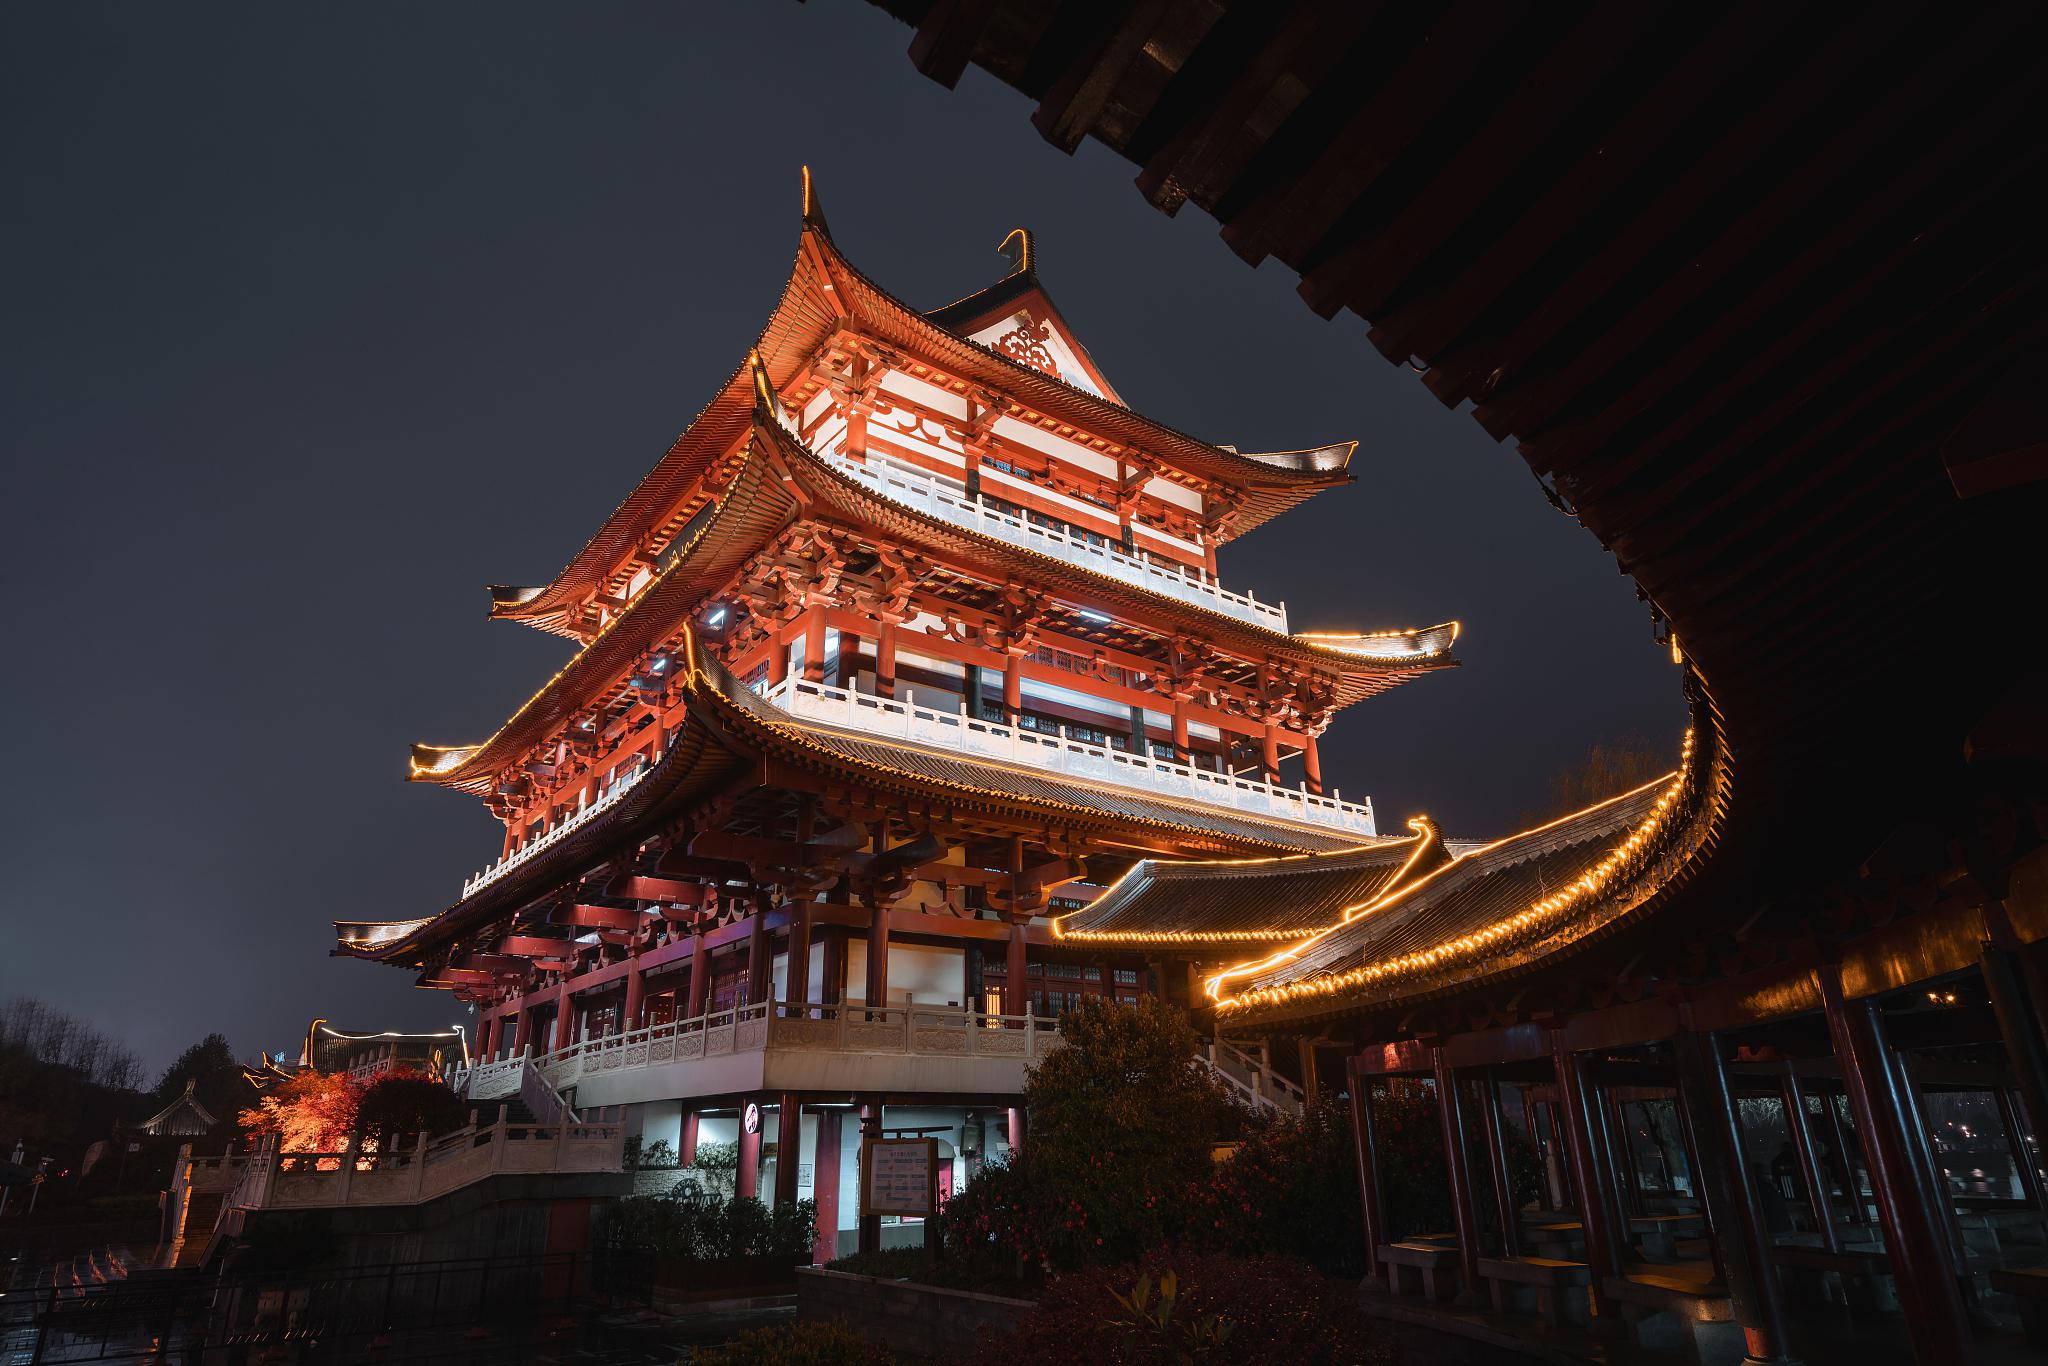 湖南省岳阳市,是一座集历史,文化,艺术,旅游于一体的综合性景点